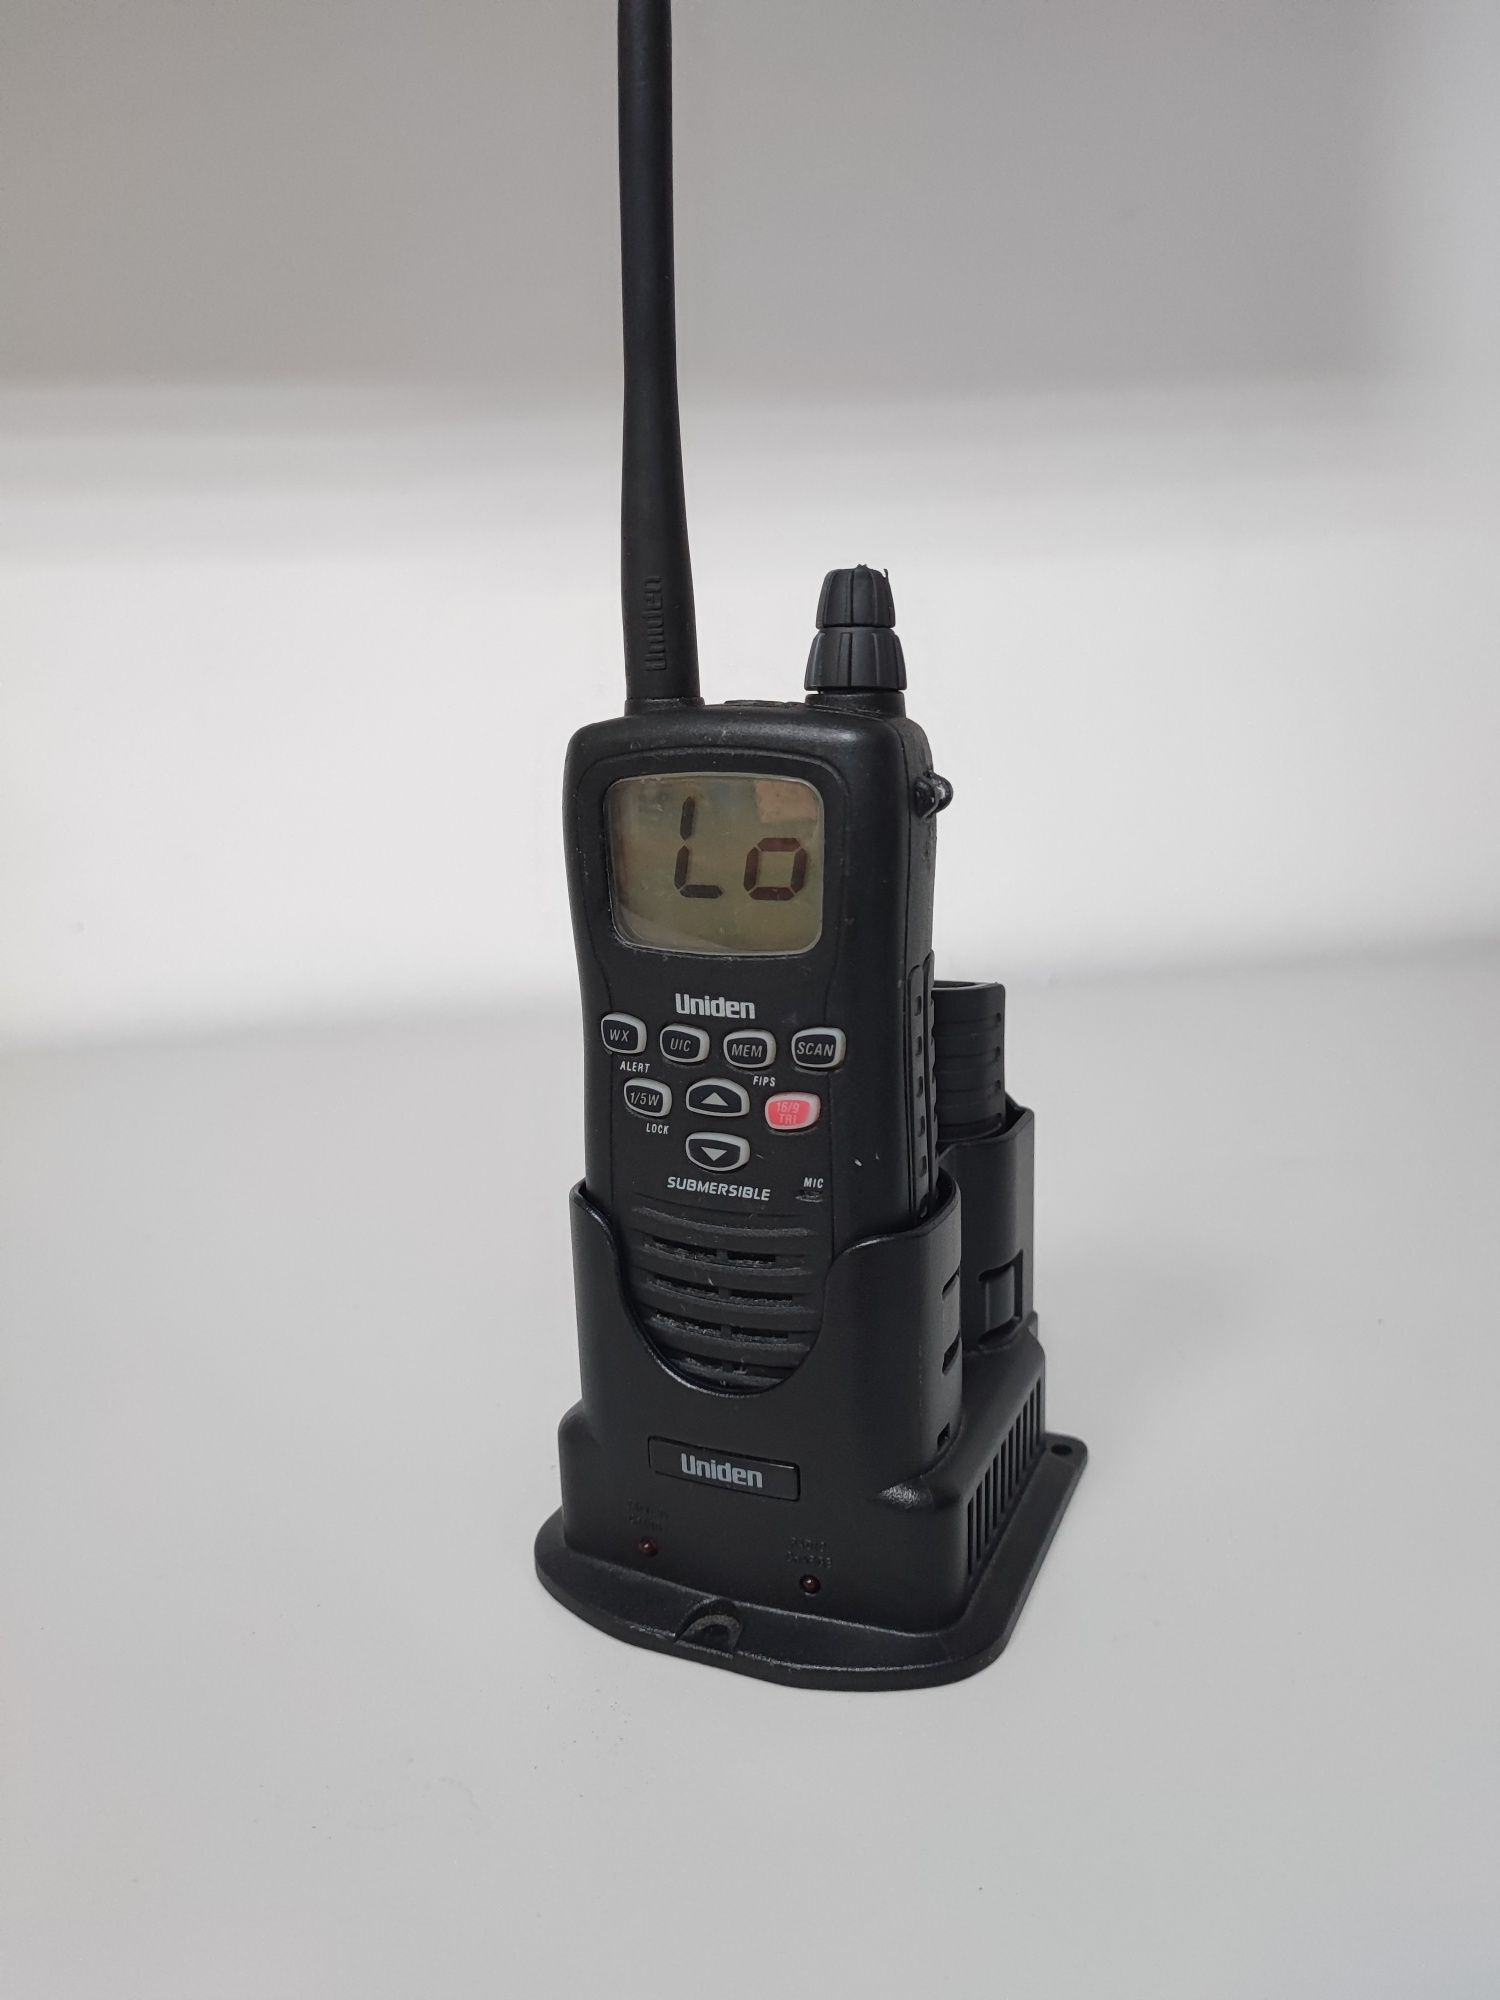 Statie radio Uniden MHS 350 submersible marine walkie talkie